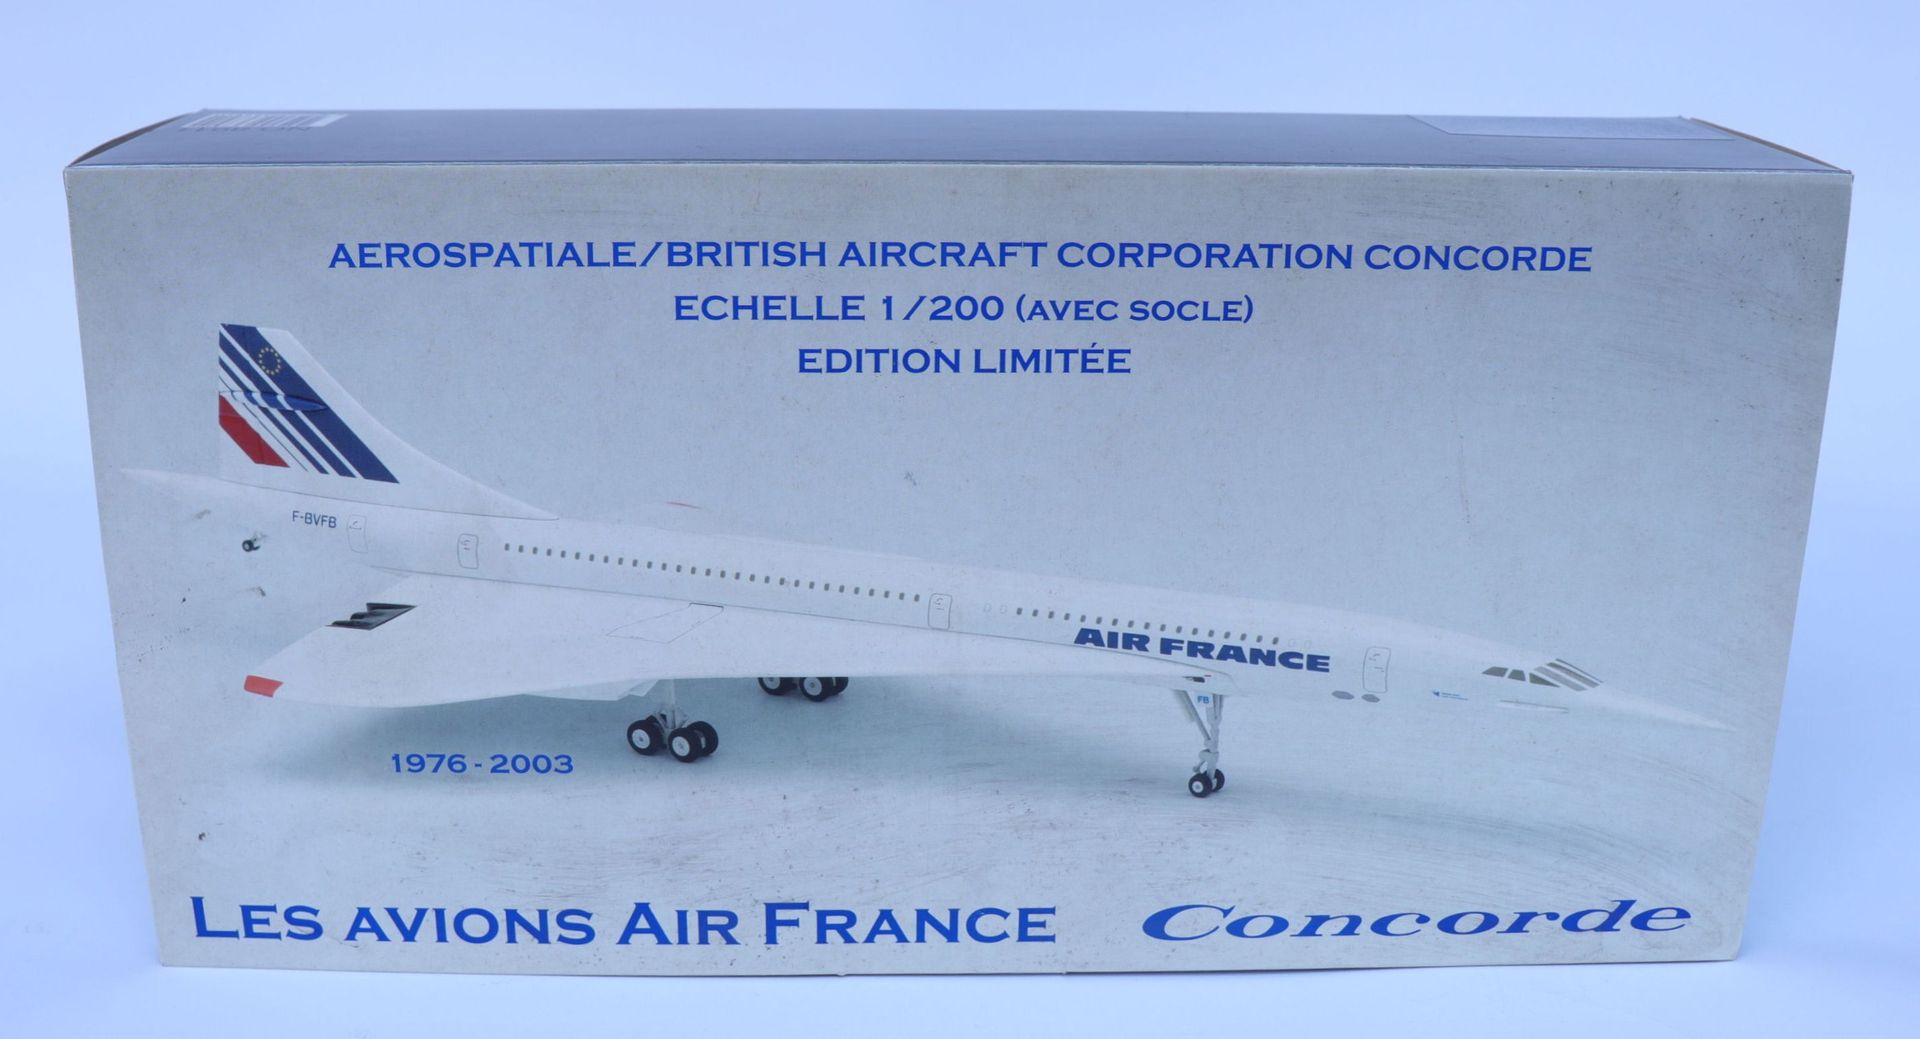 Null 法国康科德航空公司。

大型压铸Socatec协和飞机模型，注册号为F-BVFA。

比例为1/200。

法航博物馆限量版。

全新的原包装盒。

&hellip;